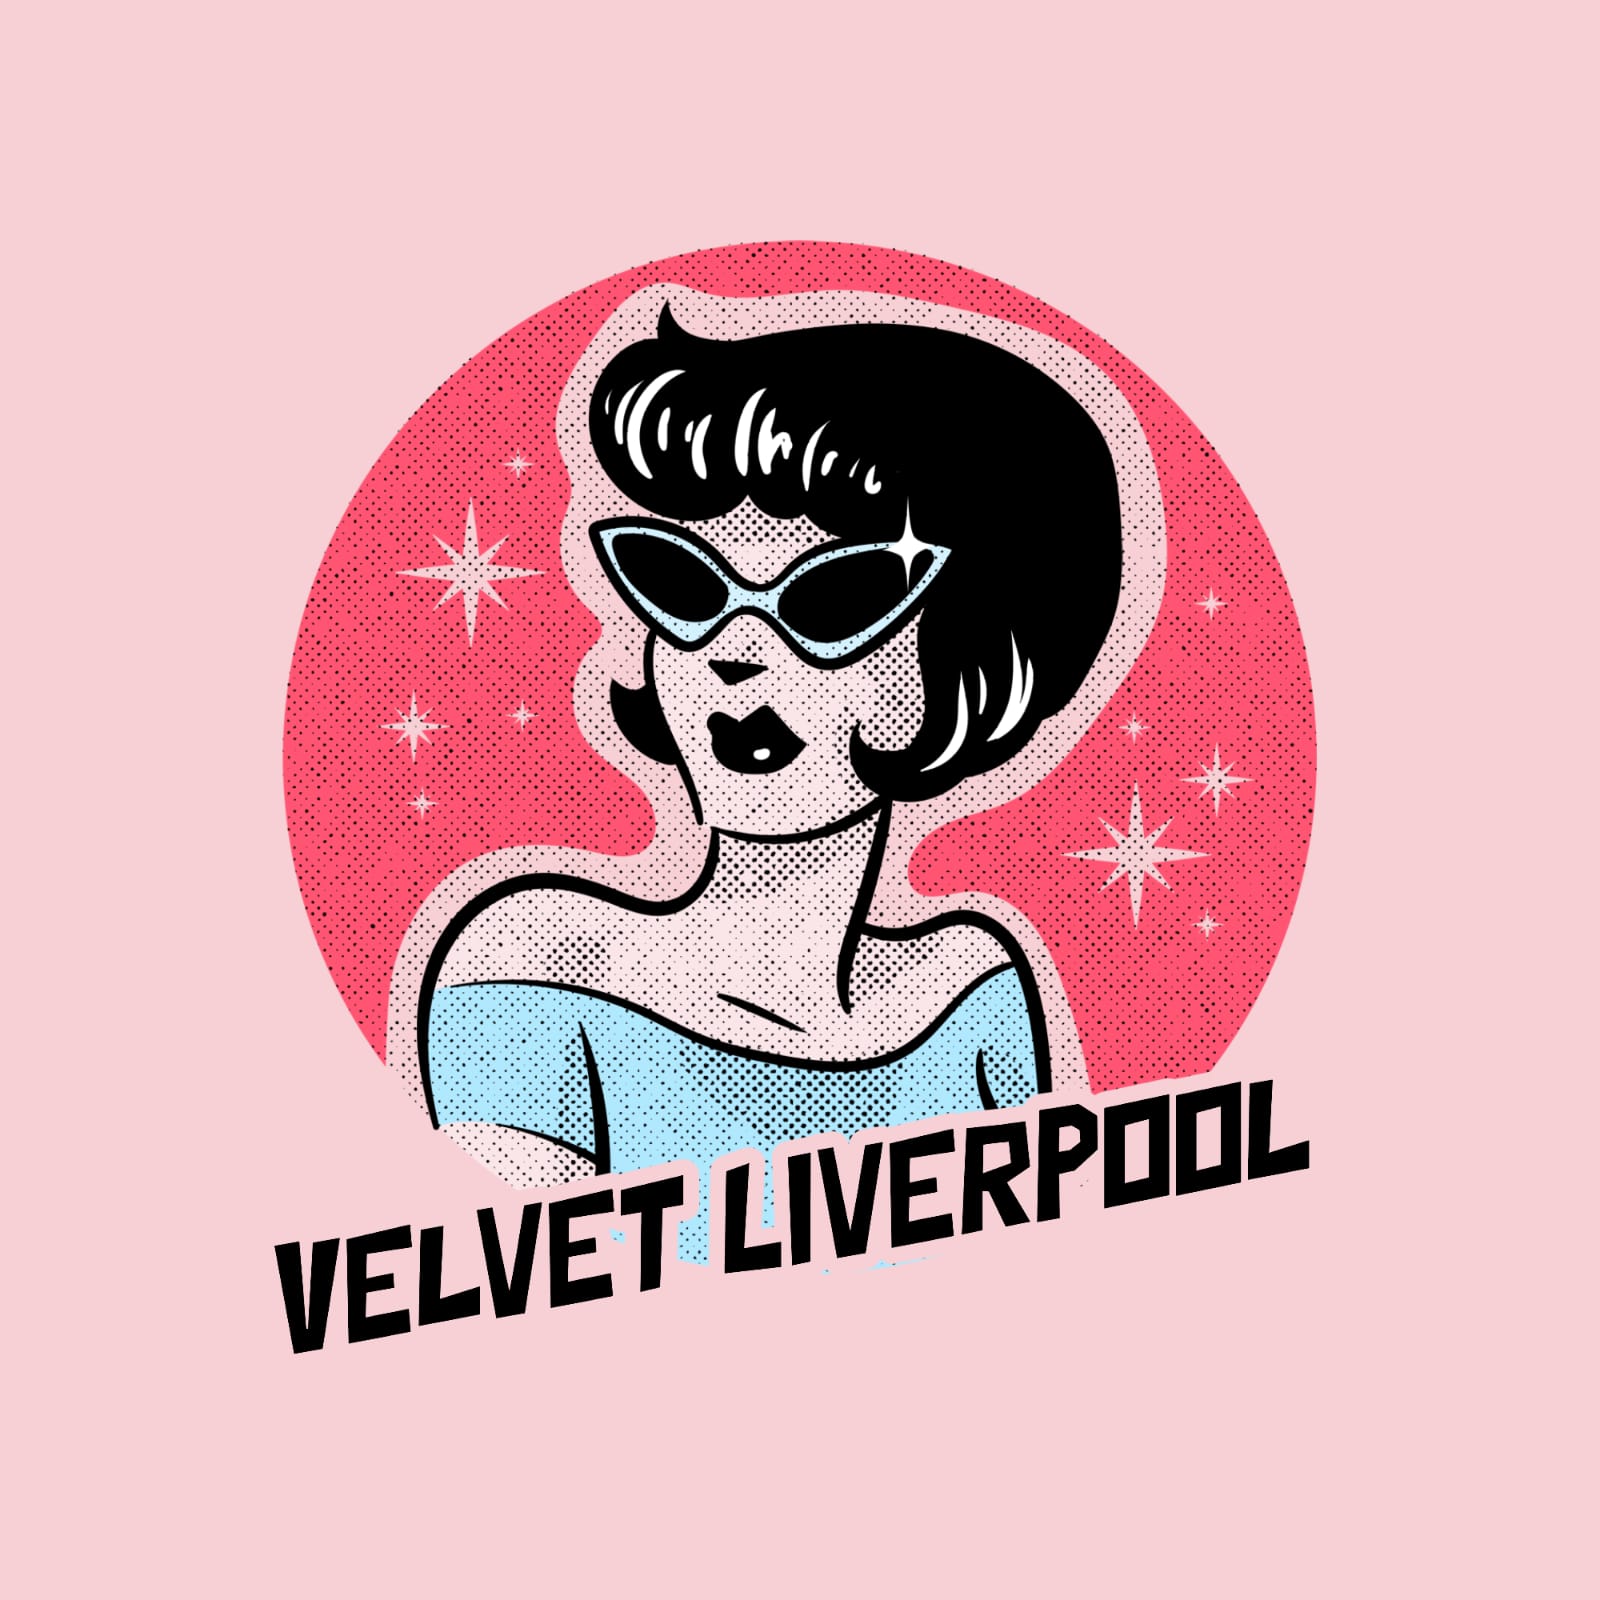 Velvet Liverpool